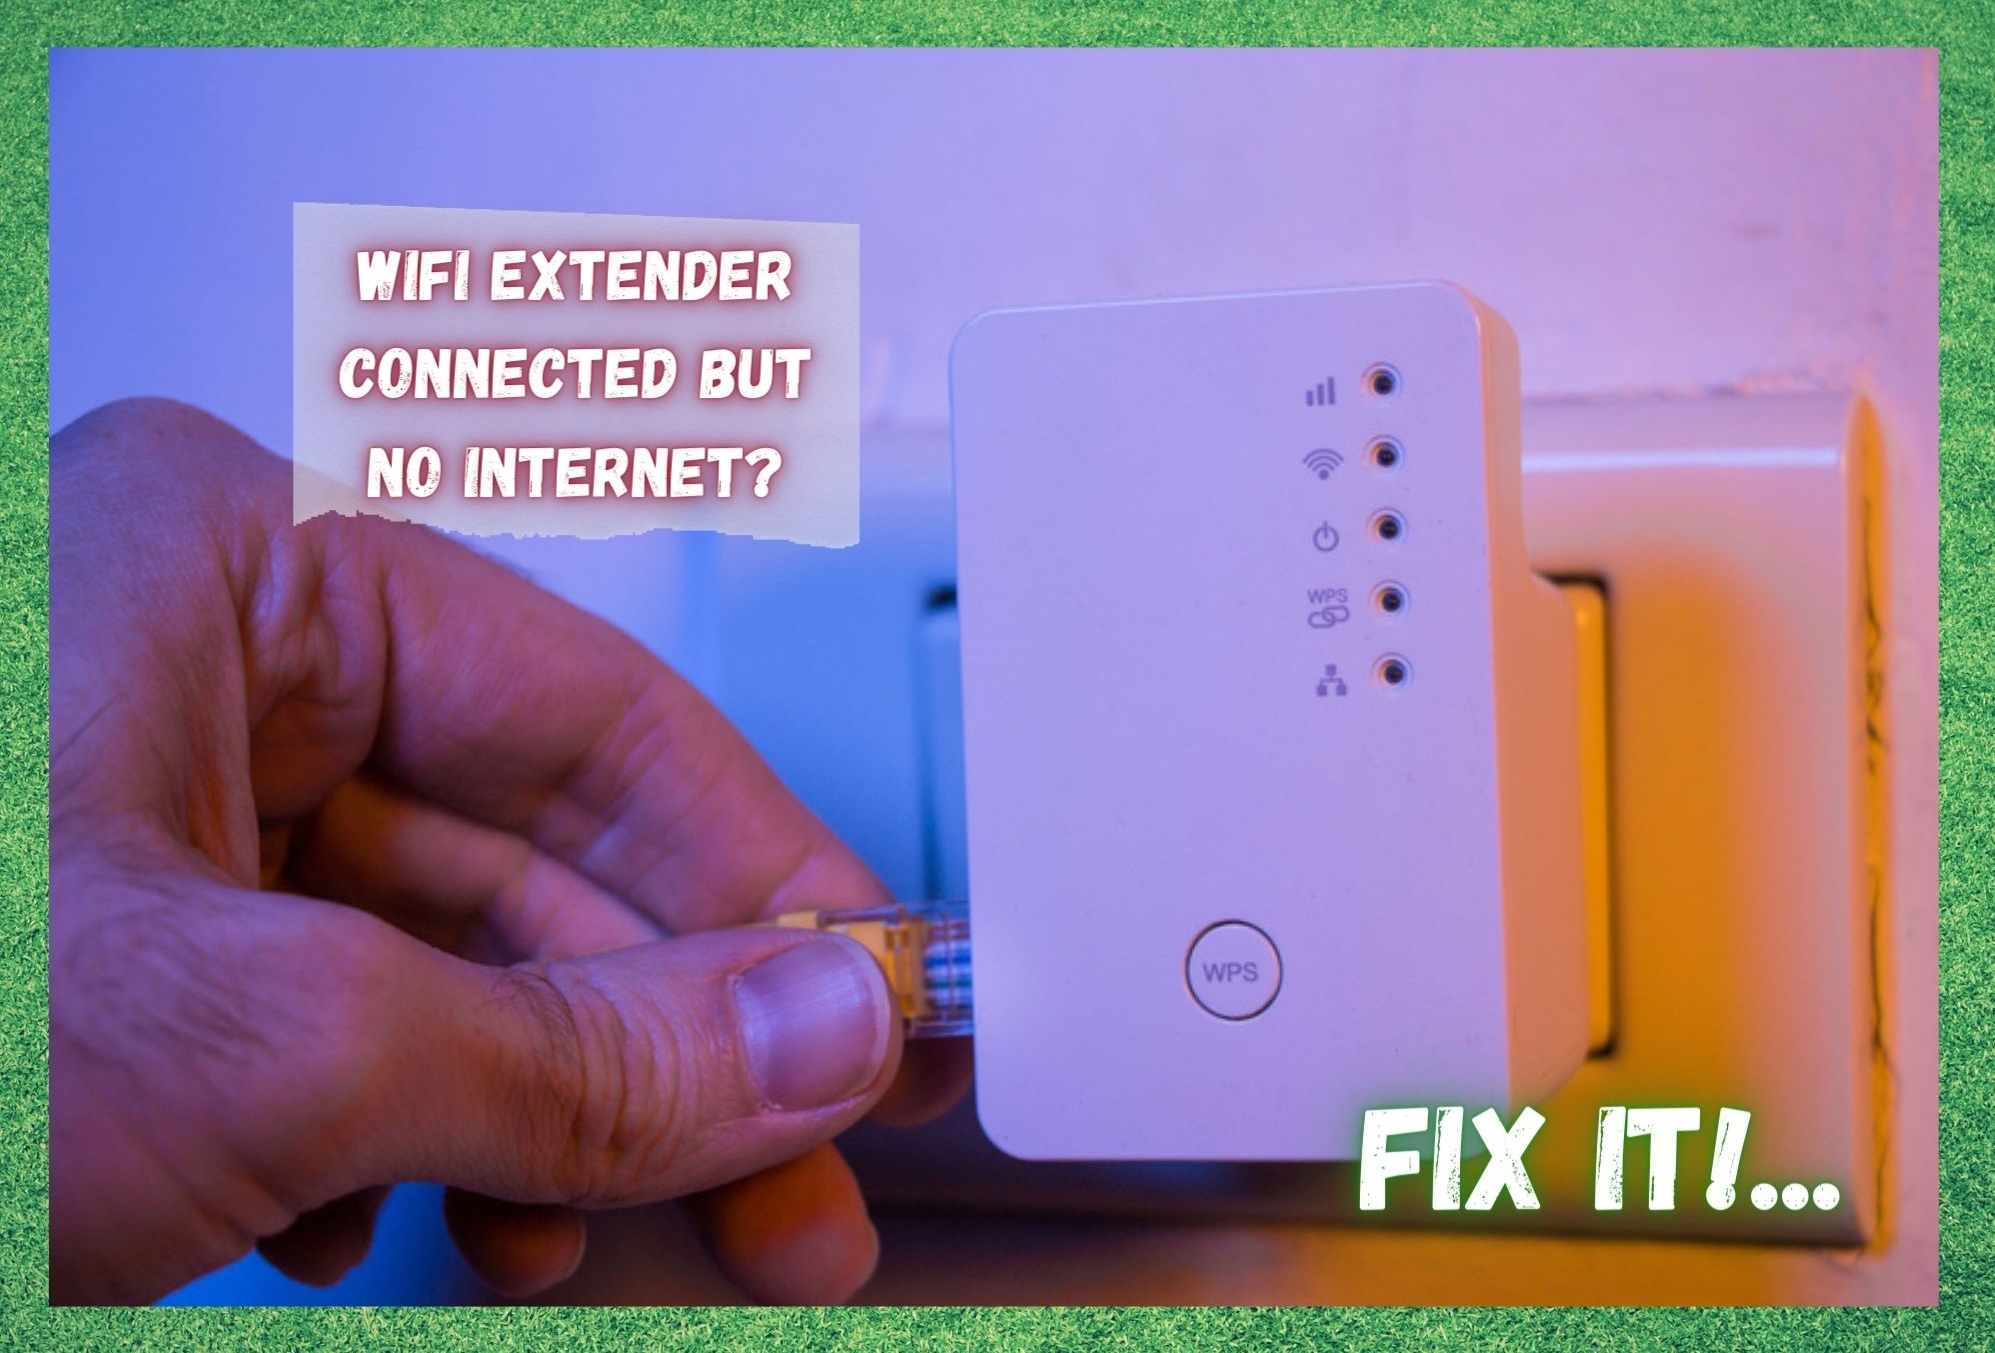 WiFi Extender verbonden maar geen internet: 5 manieren om te repareren